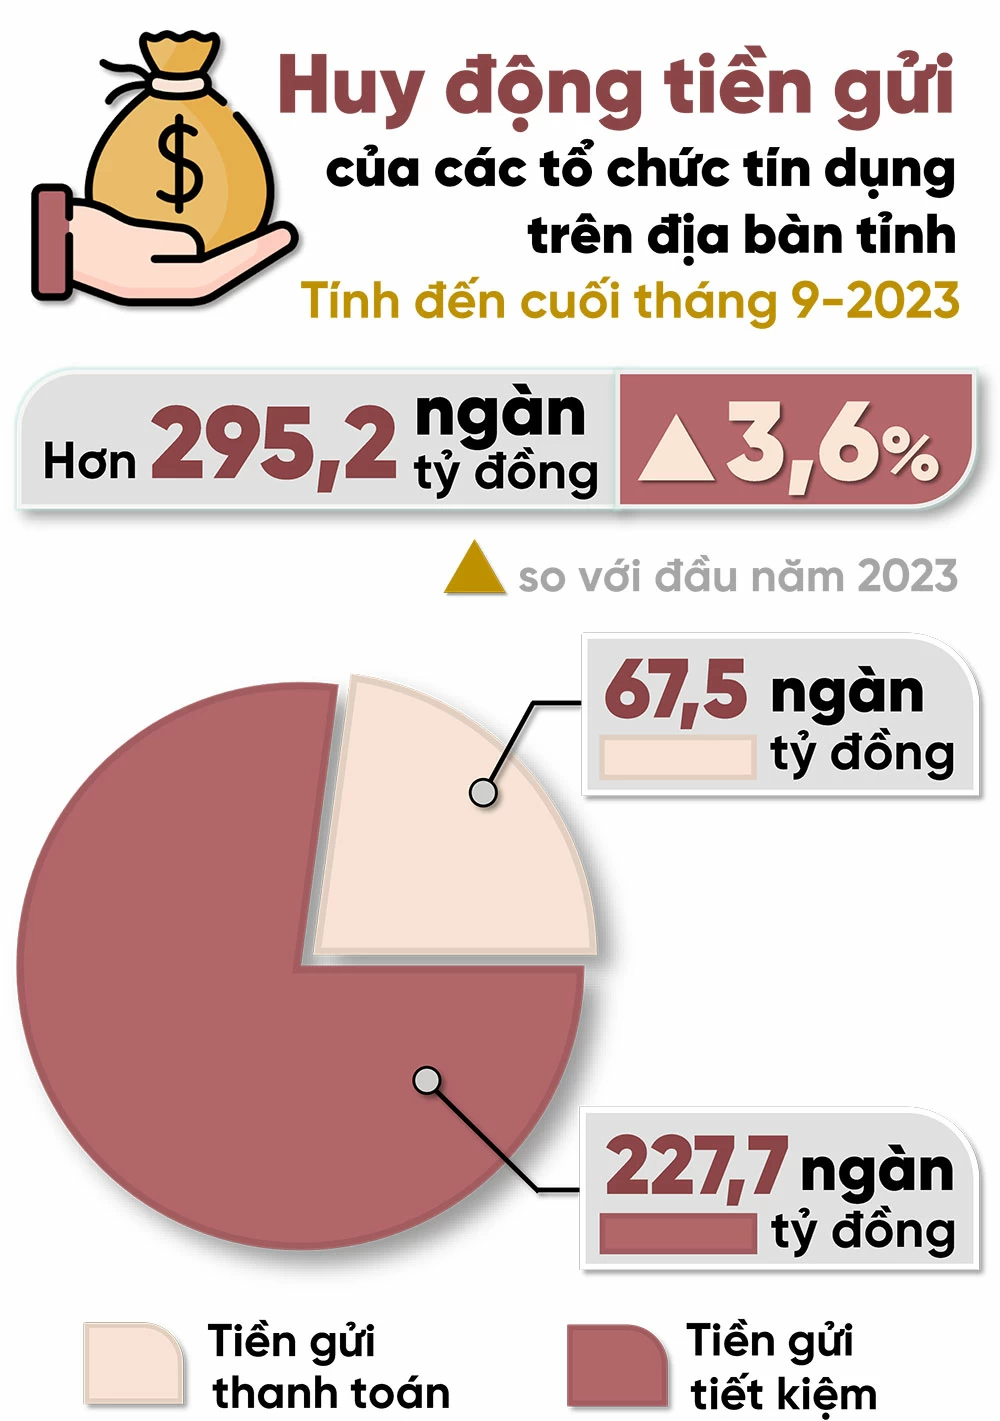 Đồ họa thể hiện kết quả huy động tiền gửi của các tổ chức tín dụng trên địa bàn Đồng Nai tính đến cuối tháng 9-2023 theo số liệu từ Ngân hàng Nhà nước Việt Nam chi nhánh Đồng Nai. Thông tin - Đồ họa: Hải Hà